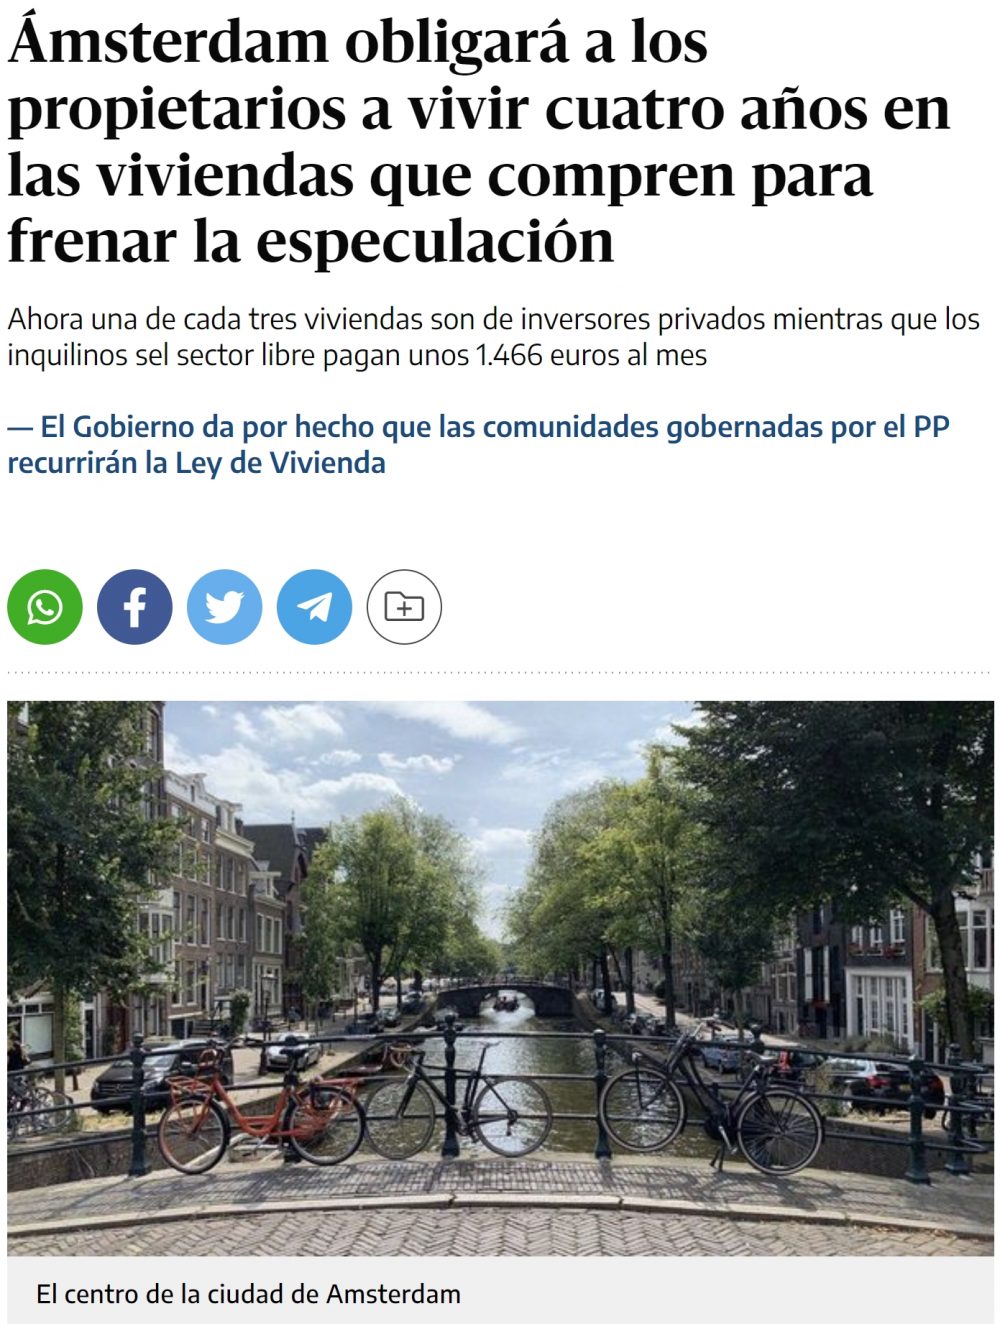 En Amsterdam van a obligar a todos los compradores de vivienda a vivir durante 4 años en ella para reducir la especulación